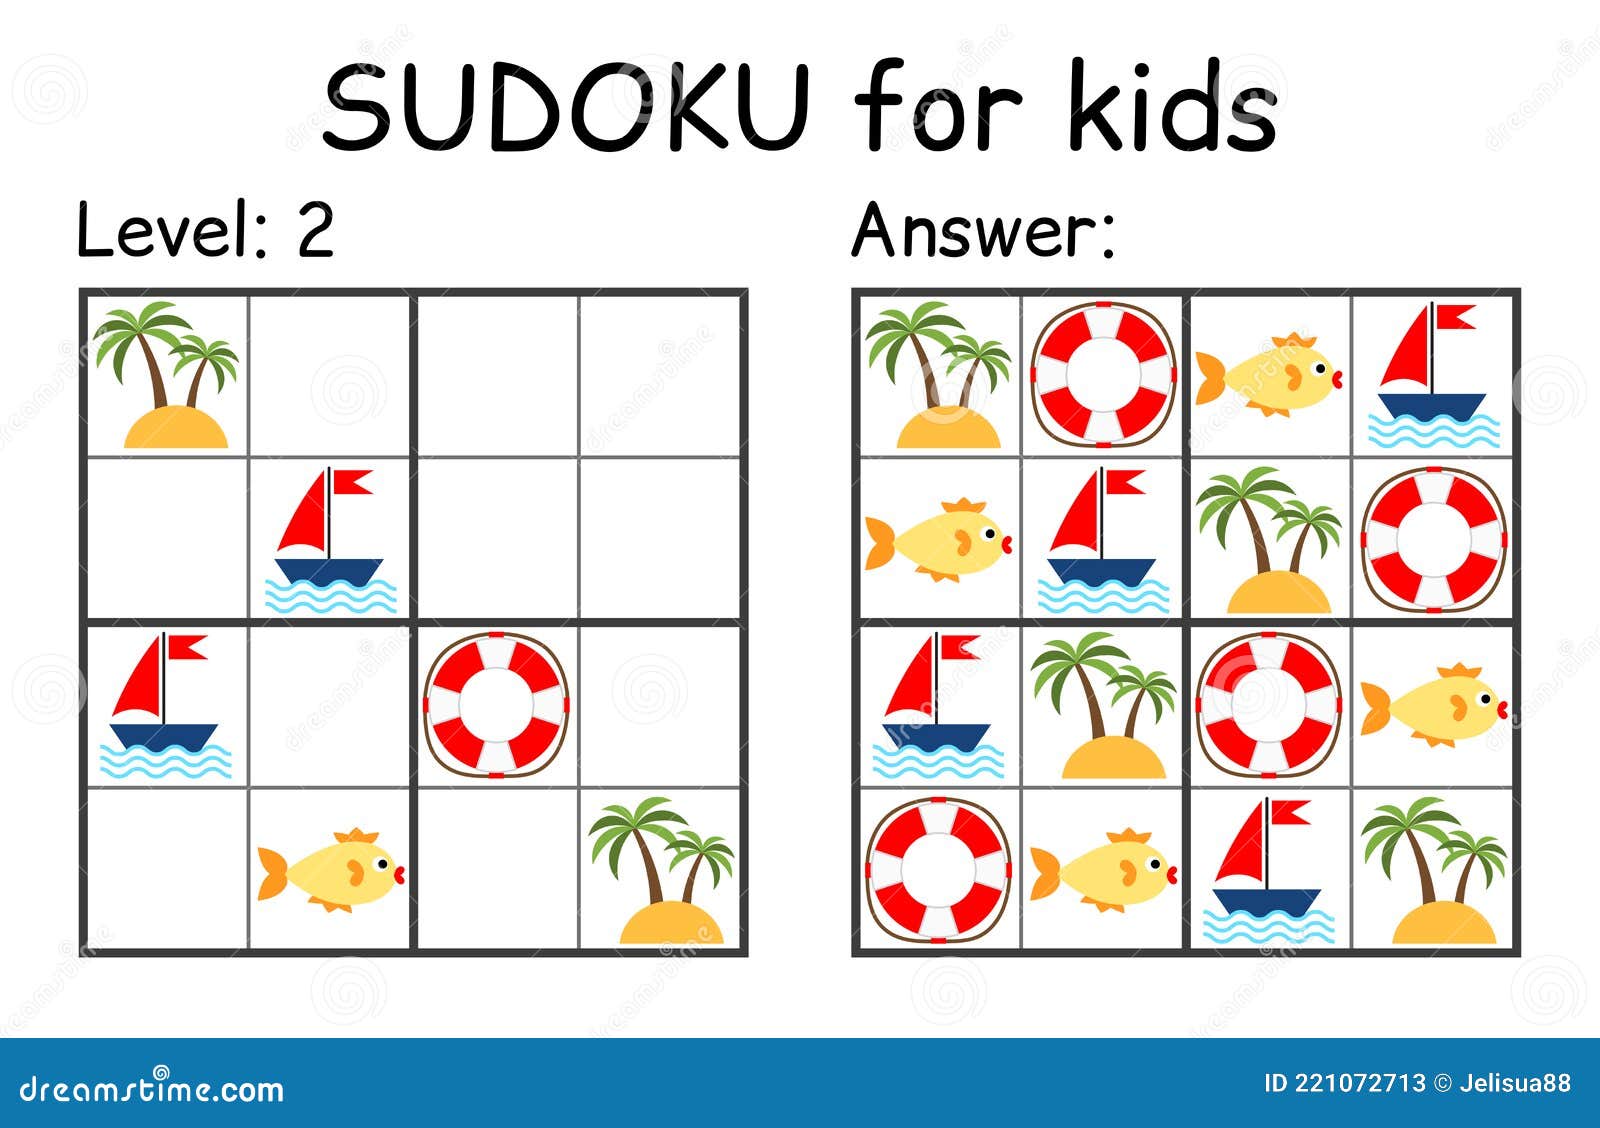 Sudoku crianças e mosaico matemático adulto quadrado mágico jogo de quebra- cabeça de lógica rebus digital